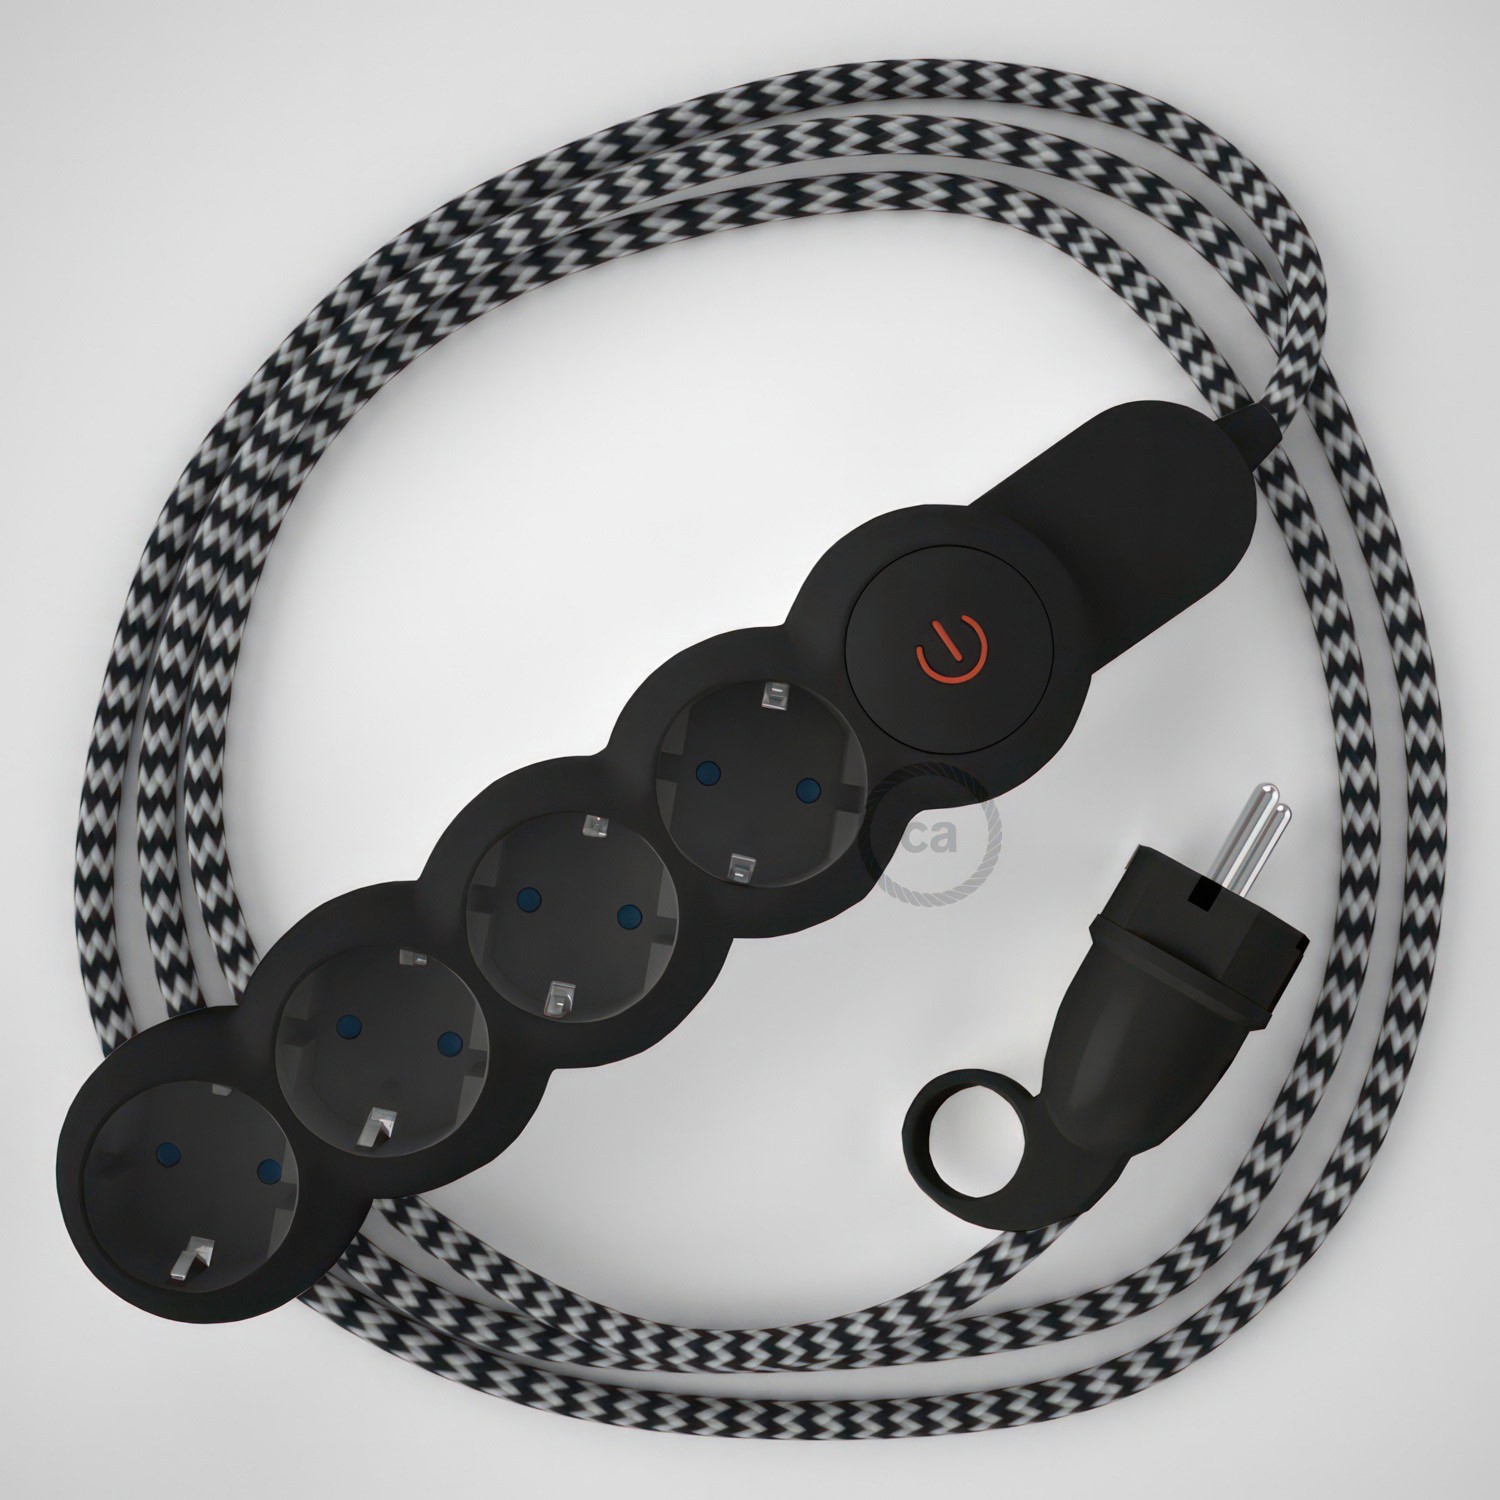 Multienchufe alemán con cable en tejido colorado efecto seda Negro ZigZag RZ04 y clavija Schuko con anillo comfort